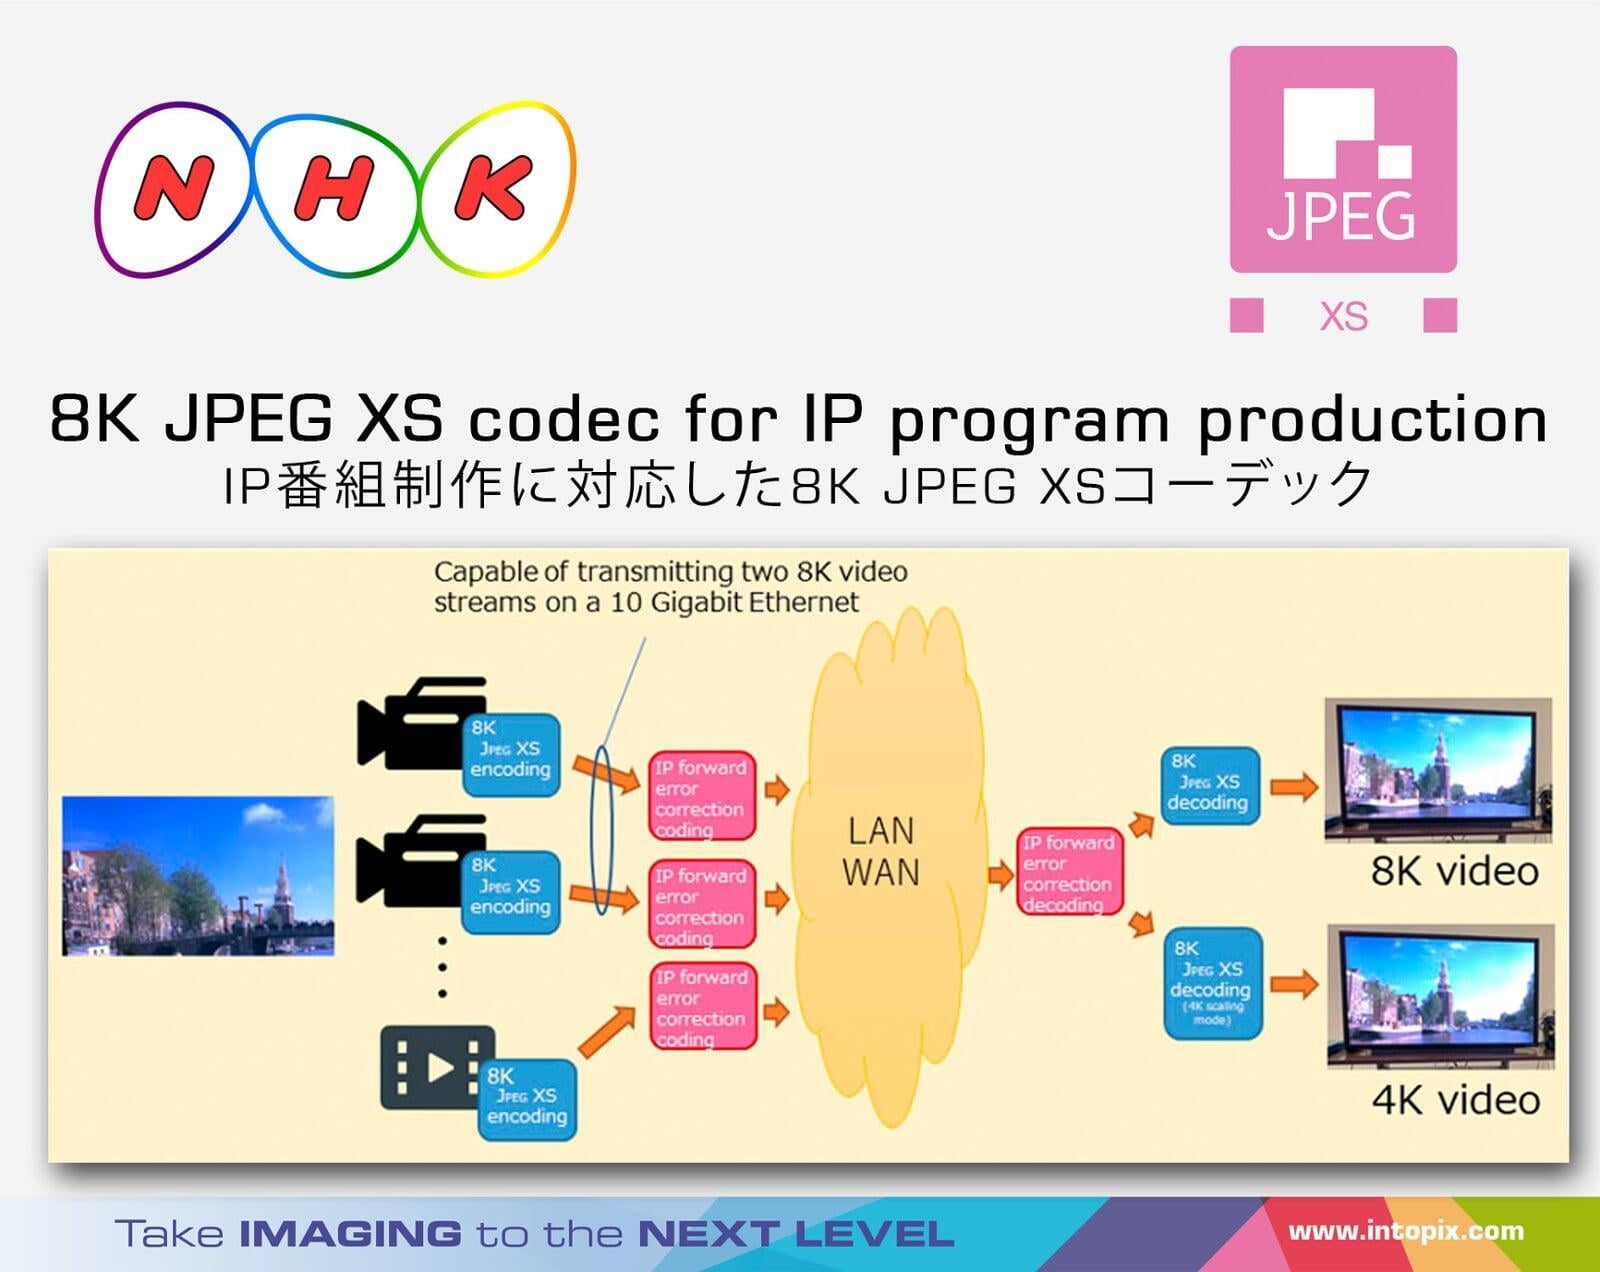 介紹8K JPEG XS編解碼器 Live 使用村島編解碼器進行製作